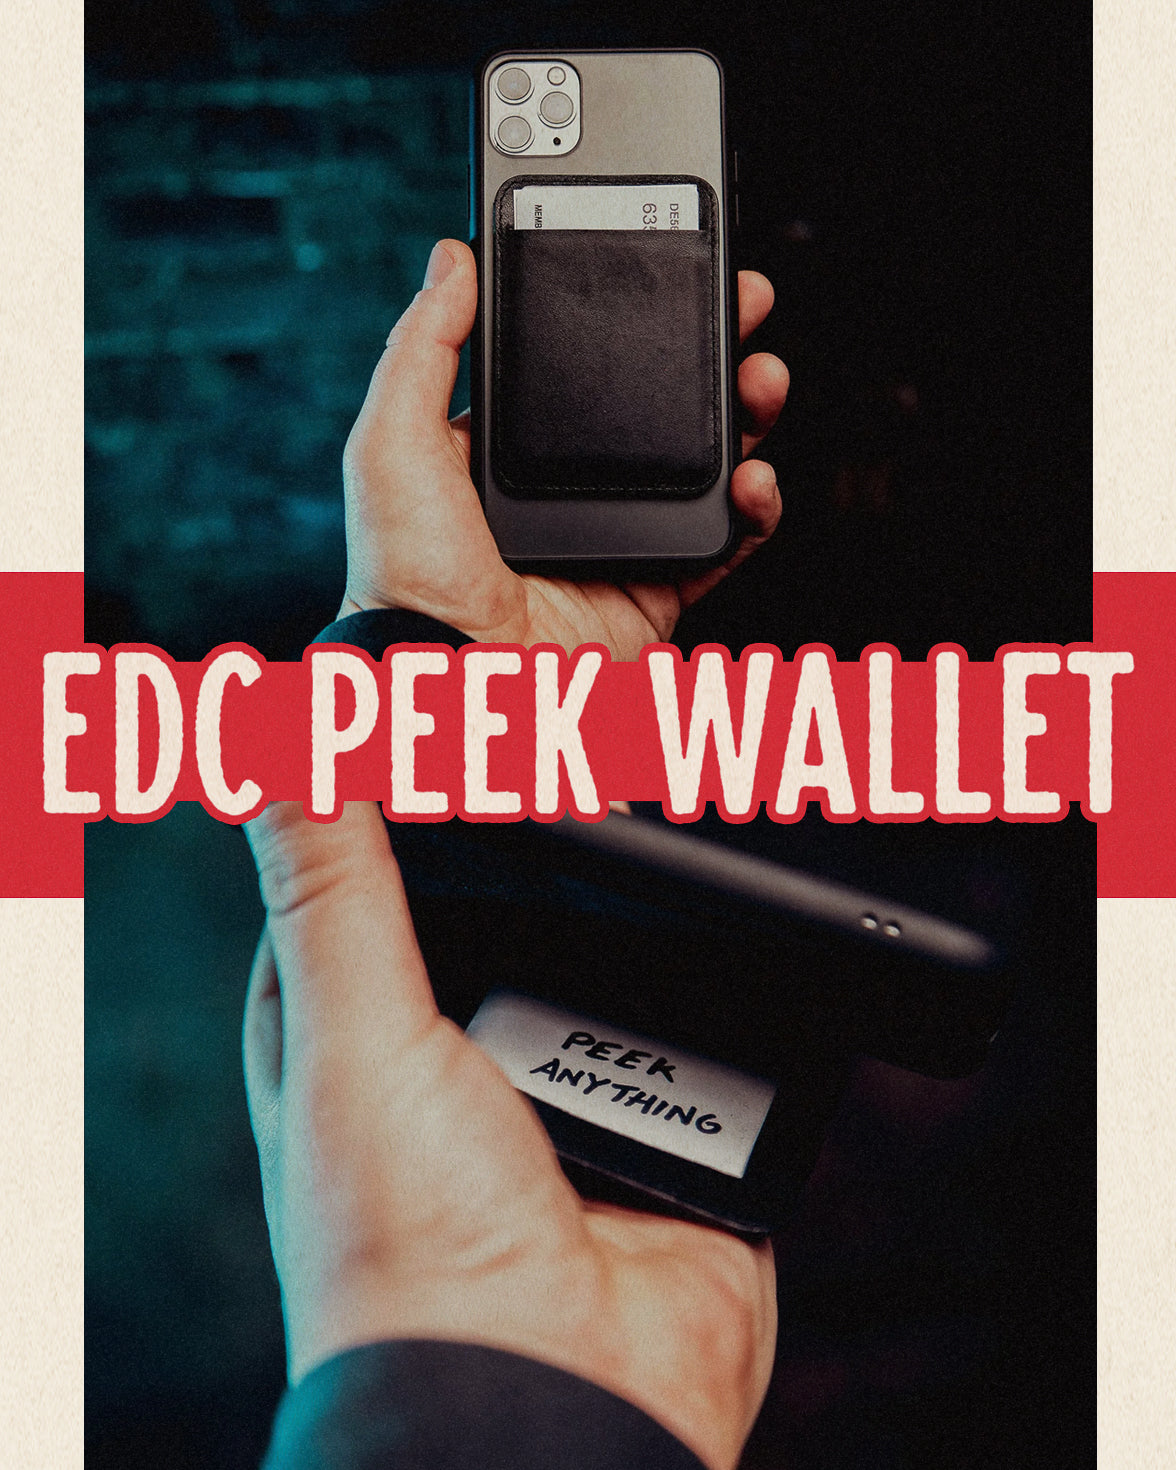 EDC Peek Wallet – Tannen's